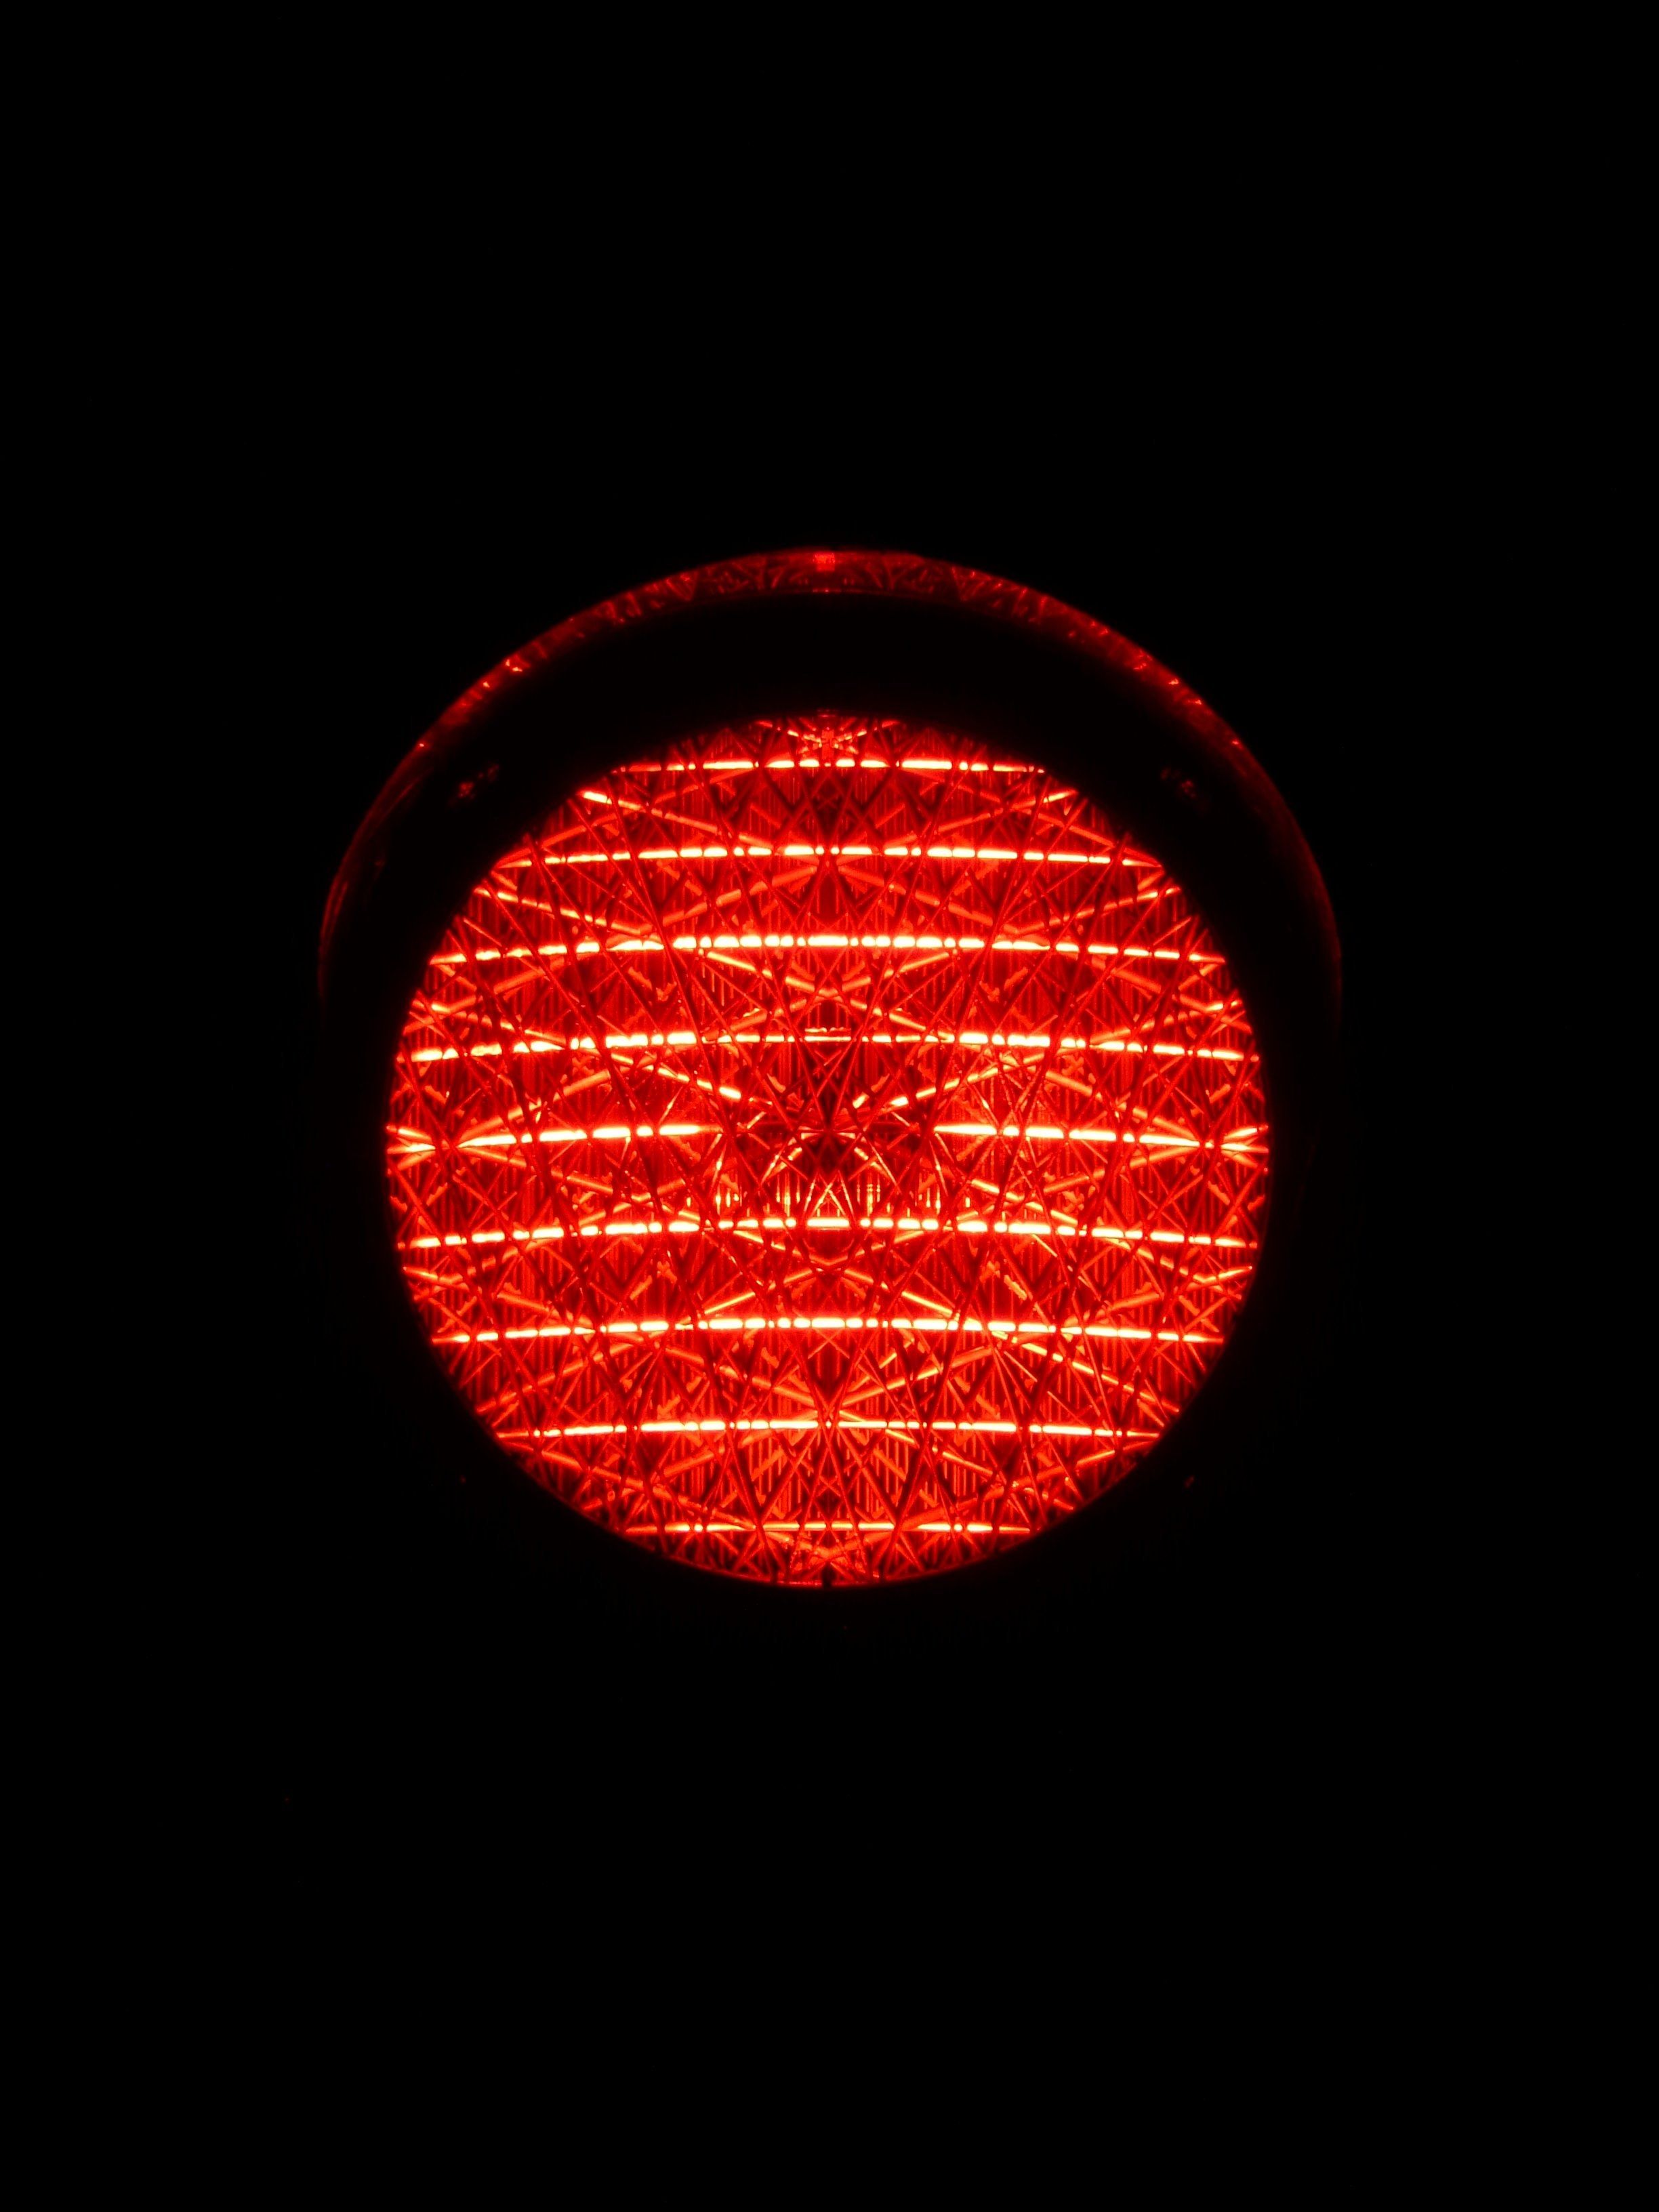 Wallpaper / traffic lights red light red light traffic signal 4k wallpaper